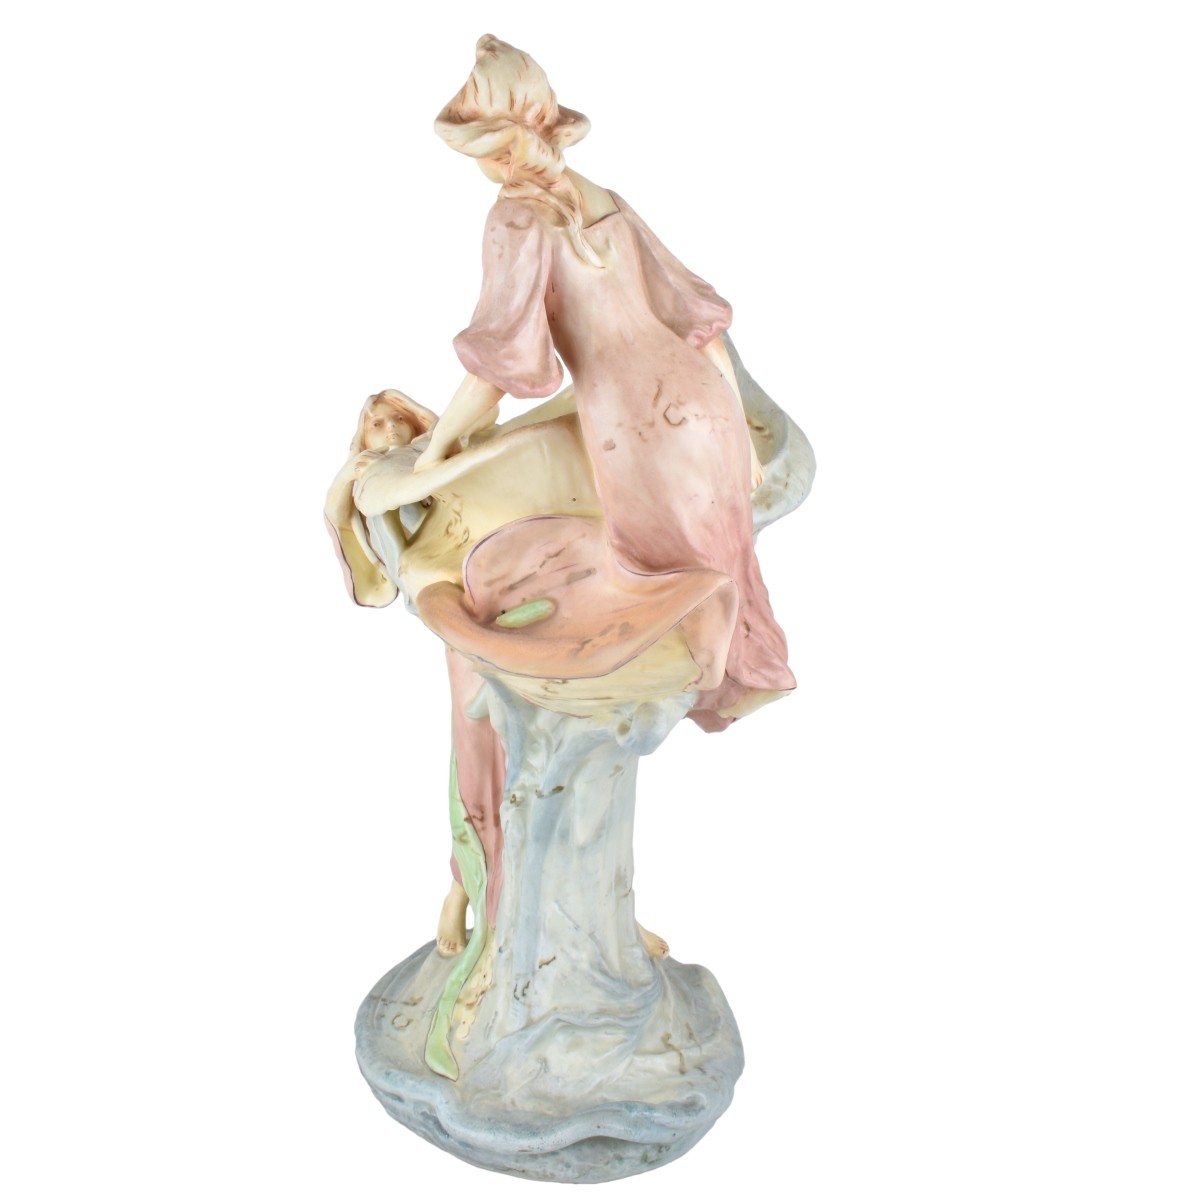 Royal Dux Amphora Art Nouveau Figural Group